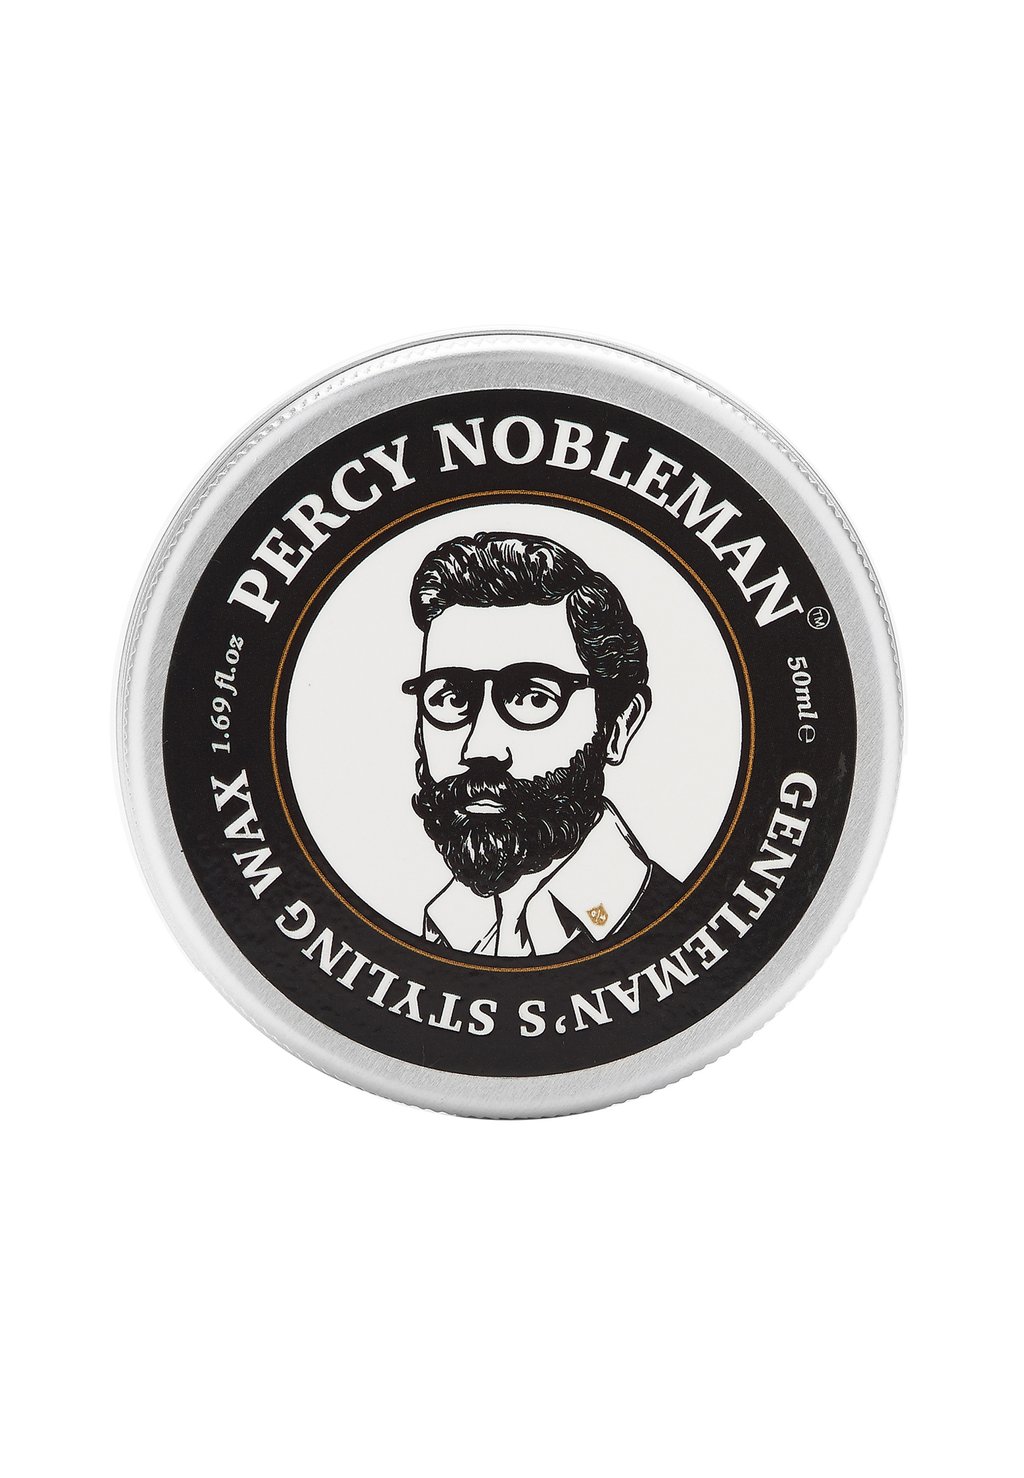 Стайлинг GENTLEMAN'S STYLING WAX Percy Nobleman укладка и стайлинг percy nobleman матовая паста для укладки волос 60 мл